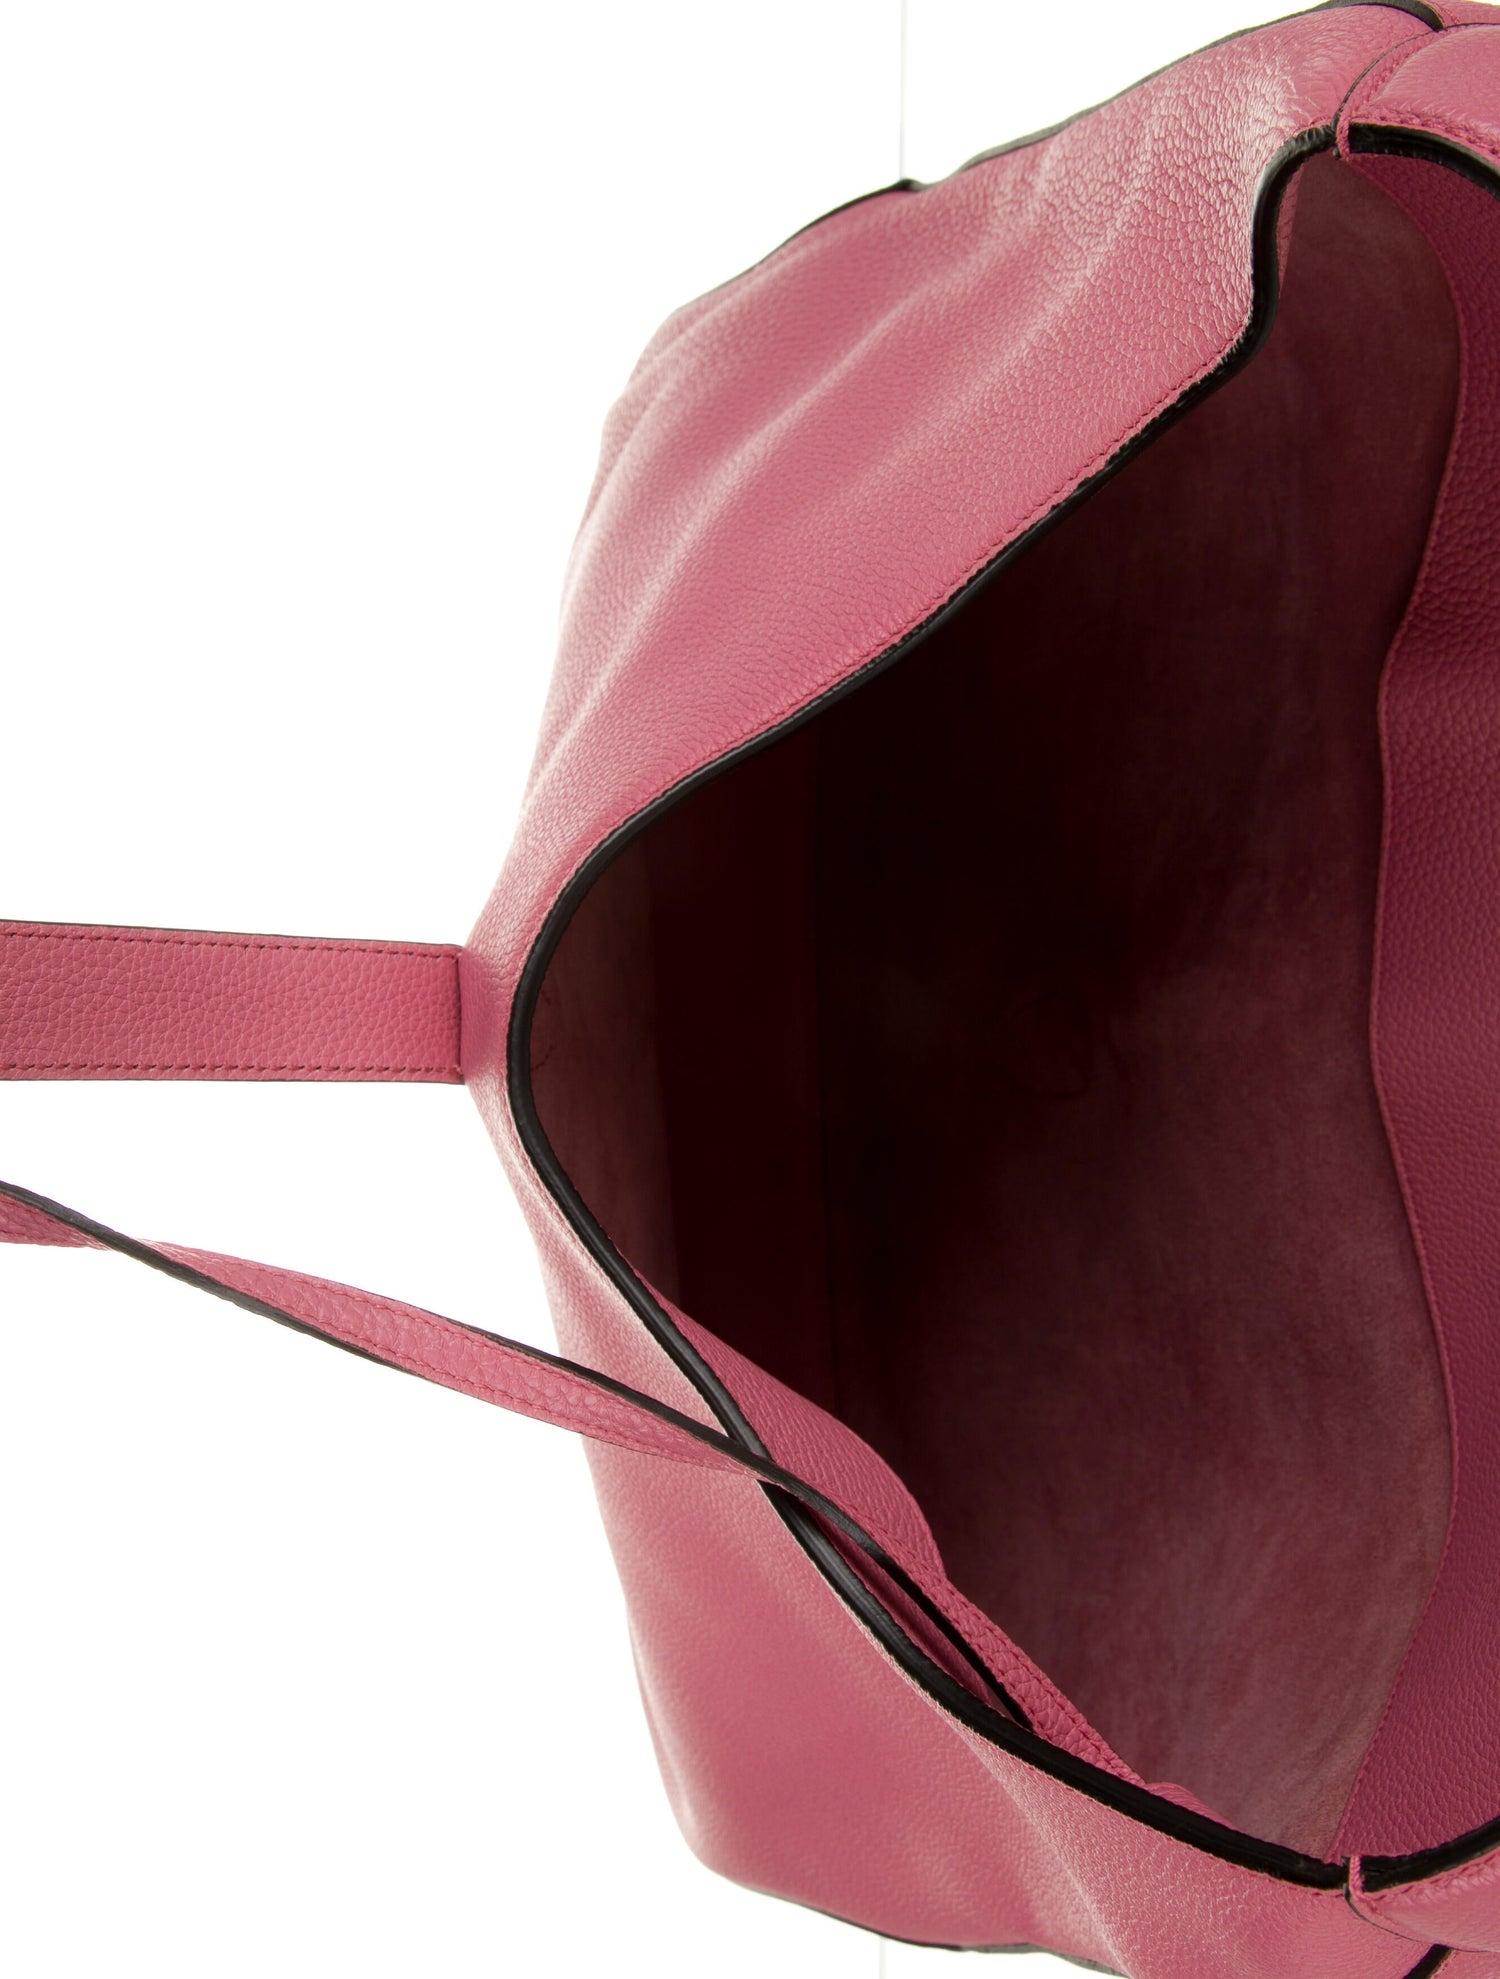 Nouveauté Gucci extra large sac Jackie O Gaga en cuir rose 3595 $ automne 2014 en vente 9